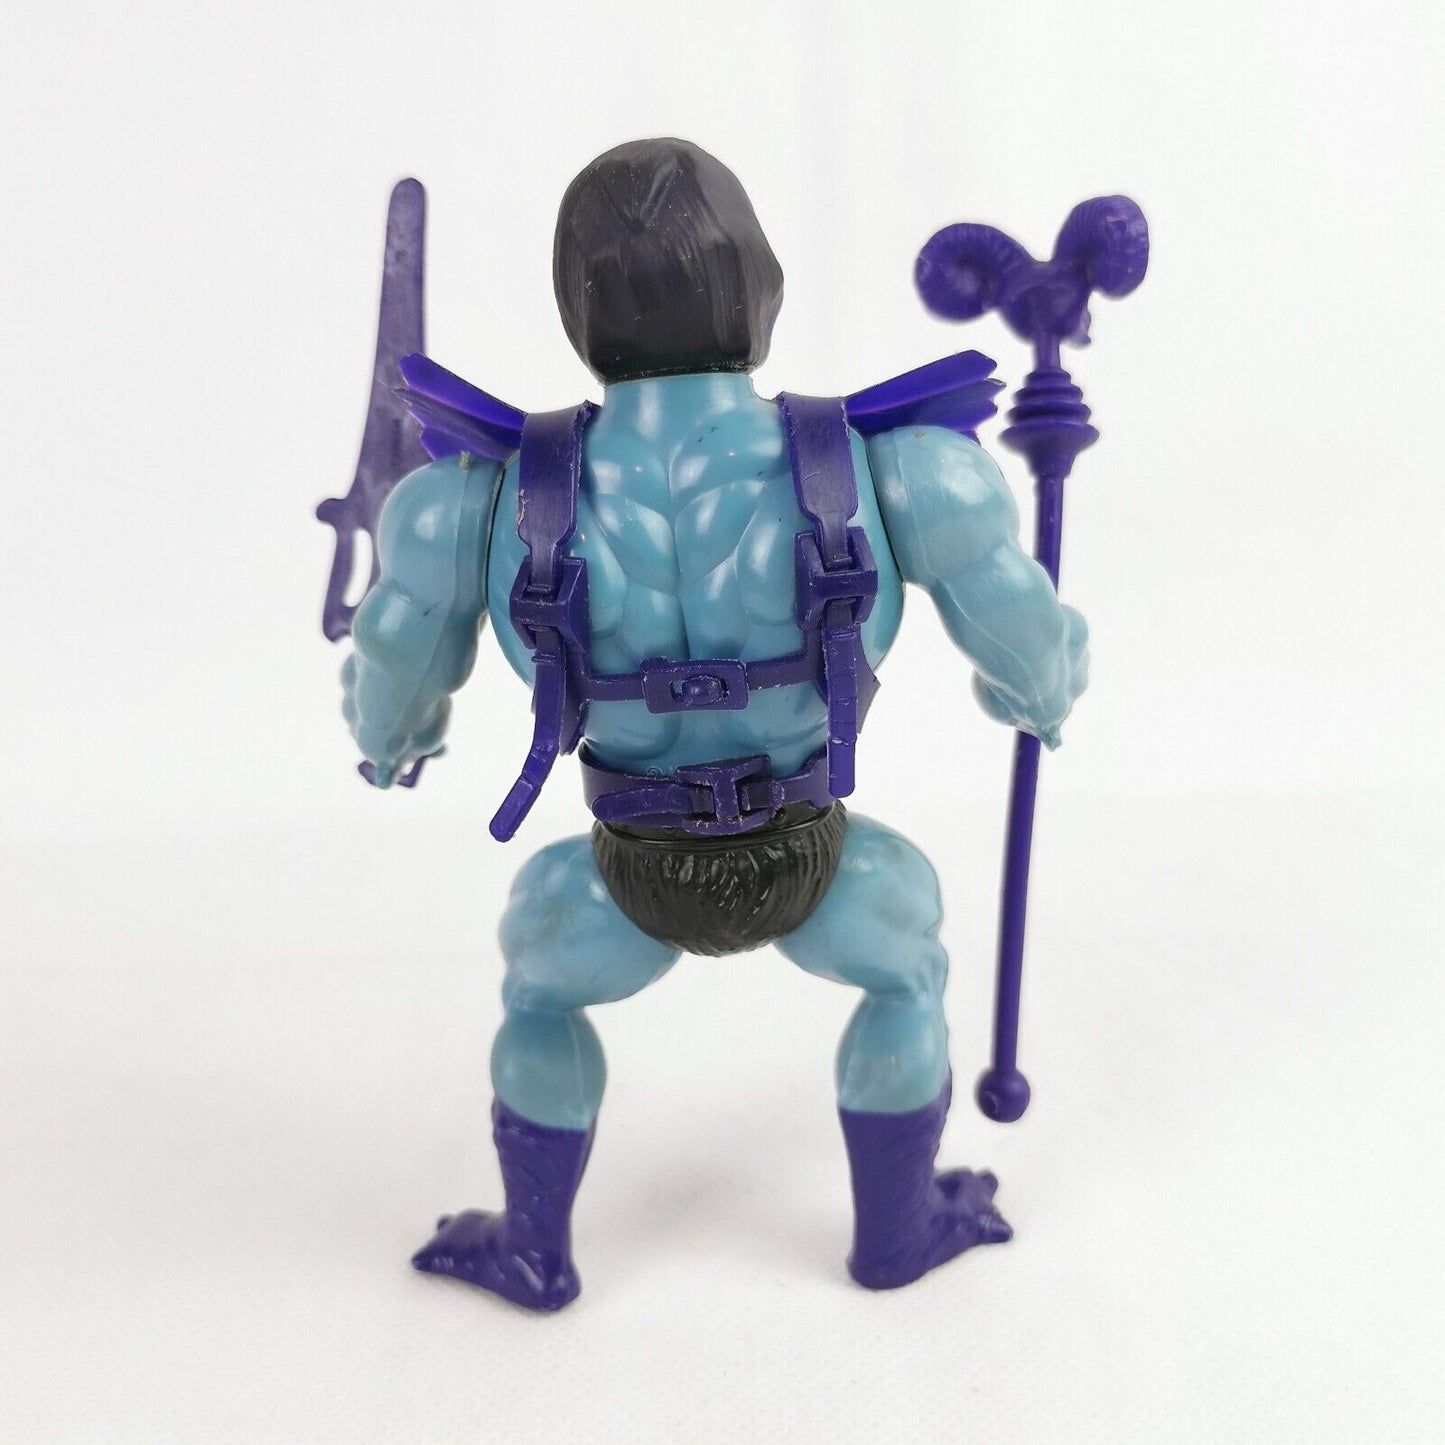 Vintage He-Man Figure - Skeletor - Vintage Toys